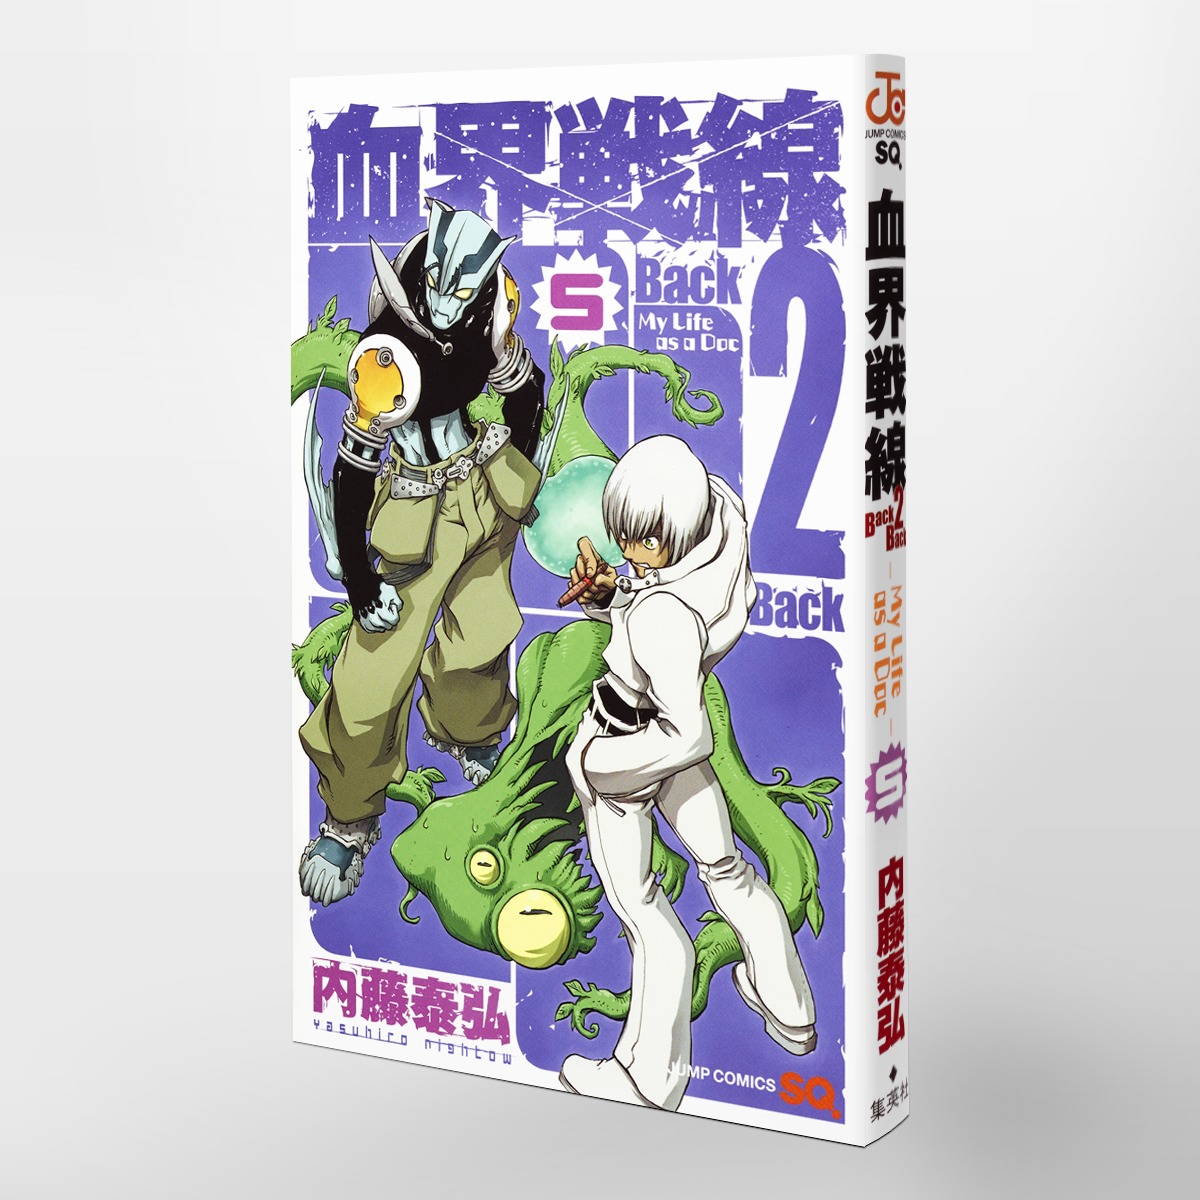 血界戦線 Back 2 Back 5 My Life As A Doc 内藤 泰弘 集英社コミック公式 S Manga